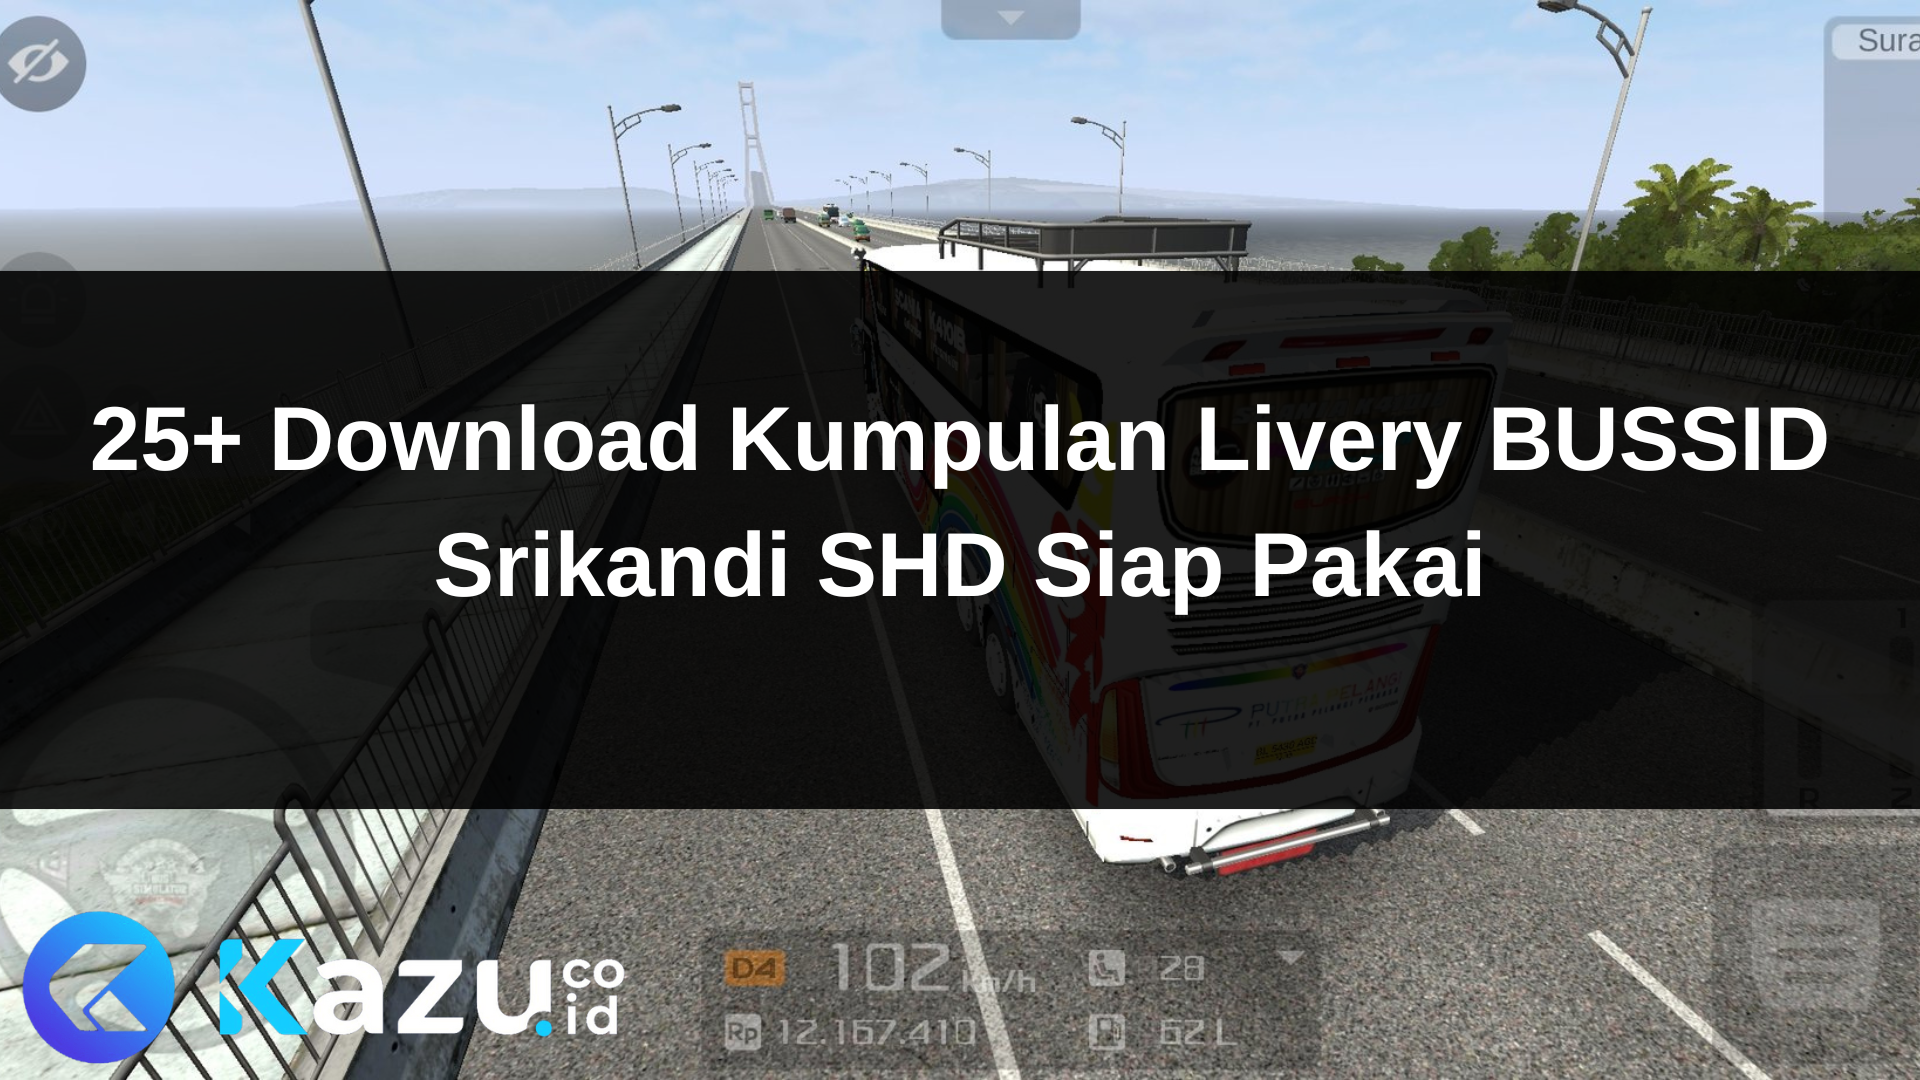 25+ Download Kumpulan Livery BUSSID Srikandi SHD Siap Pakai